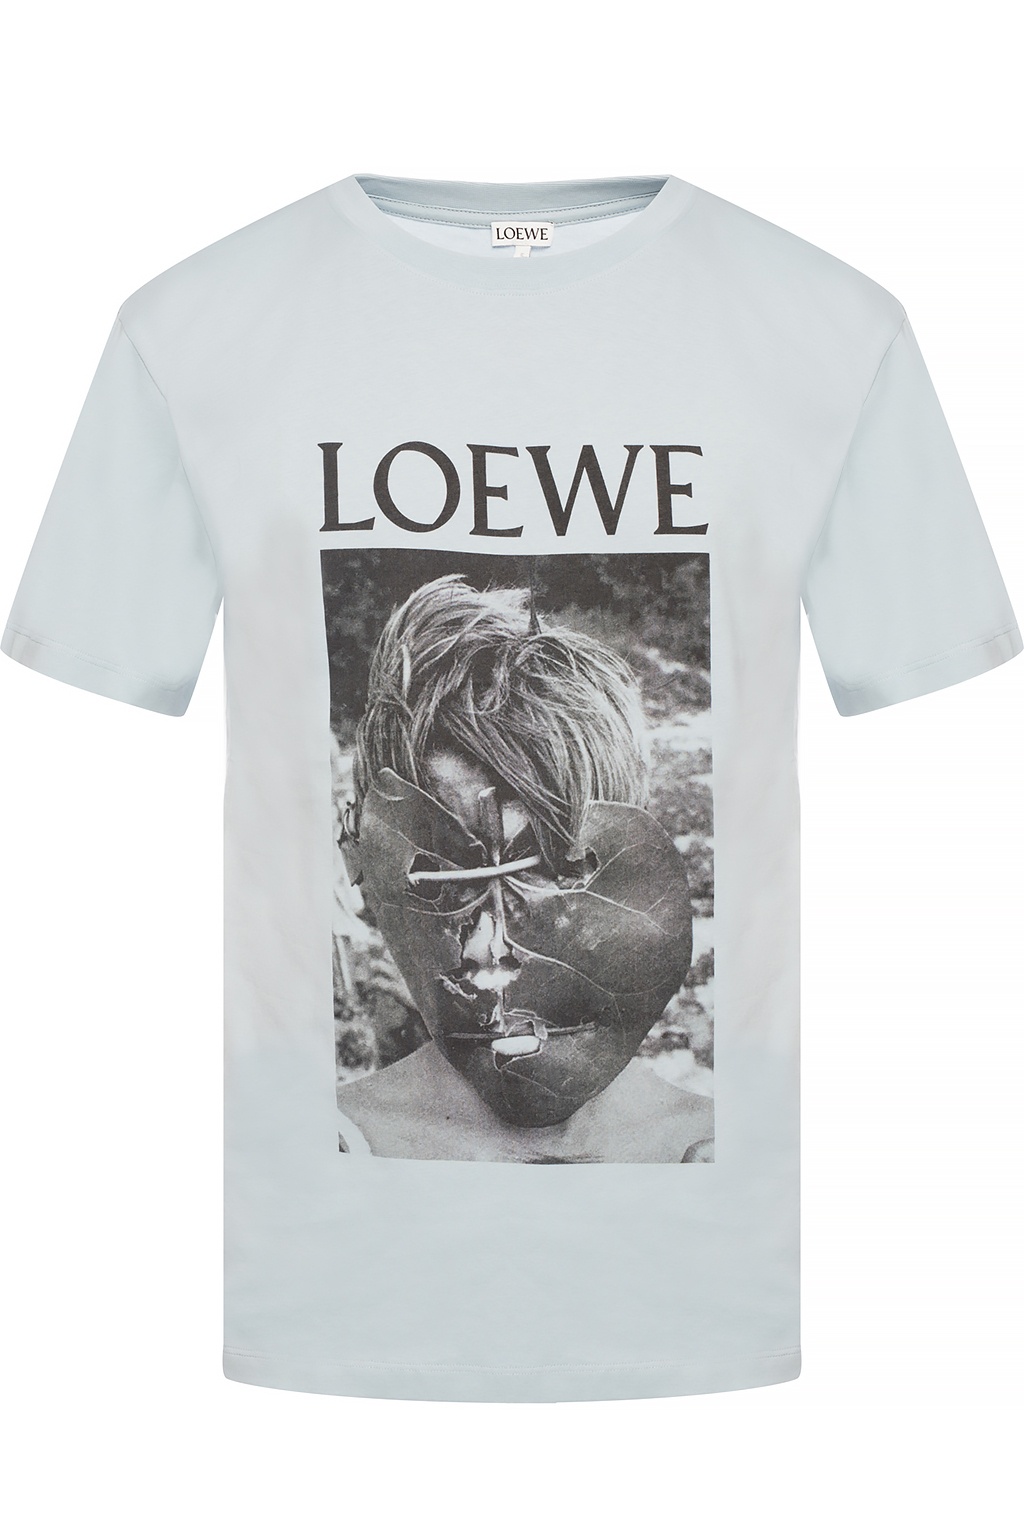 loewe logo shirt